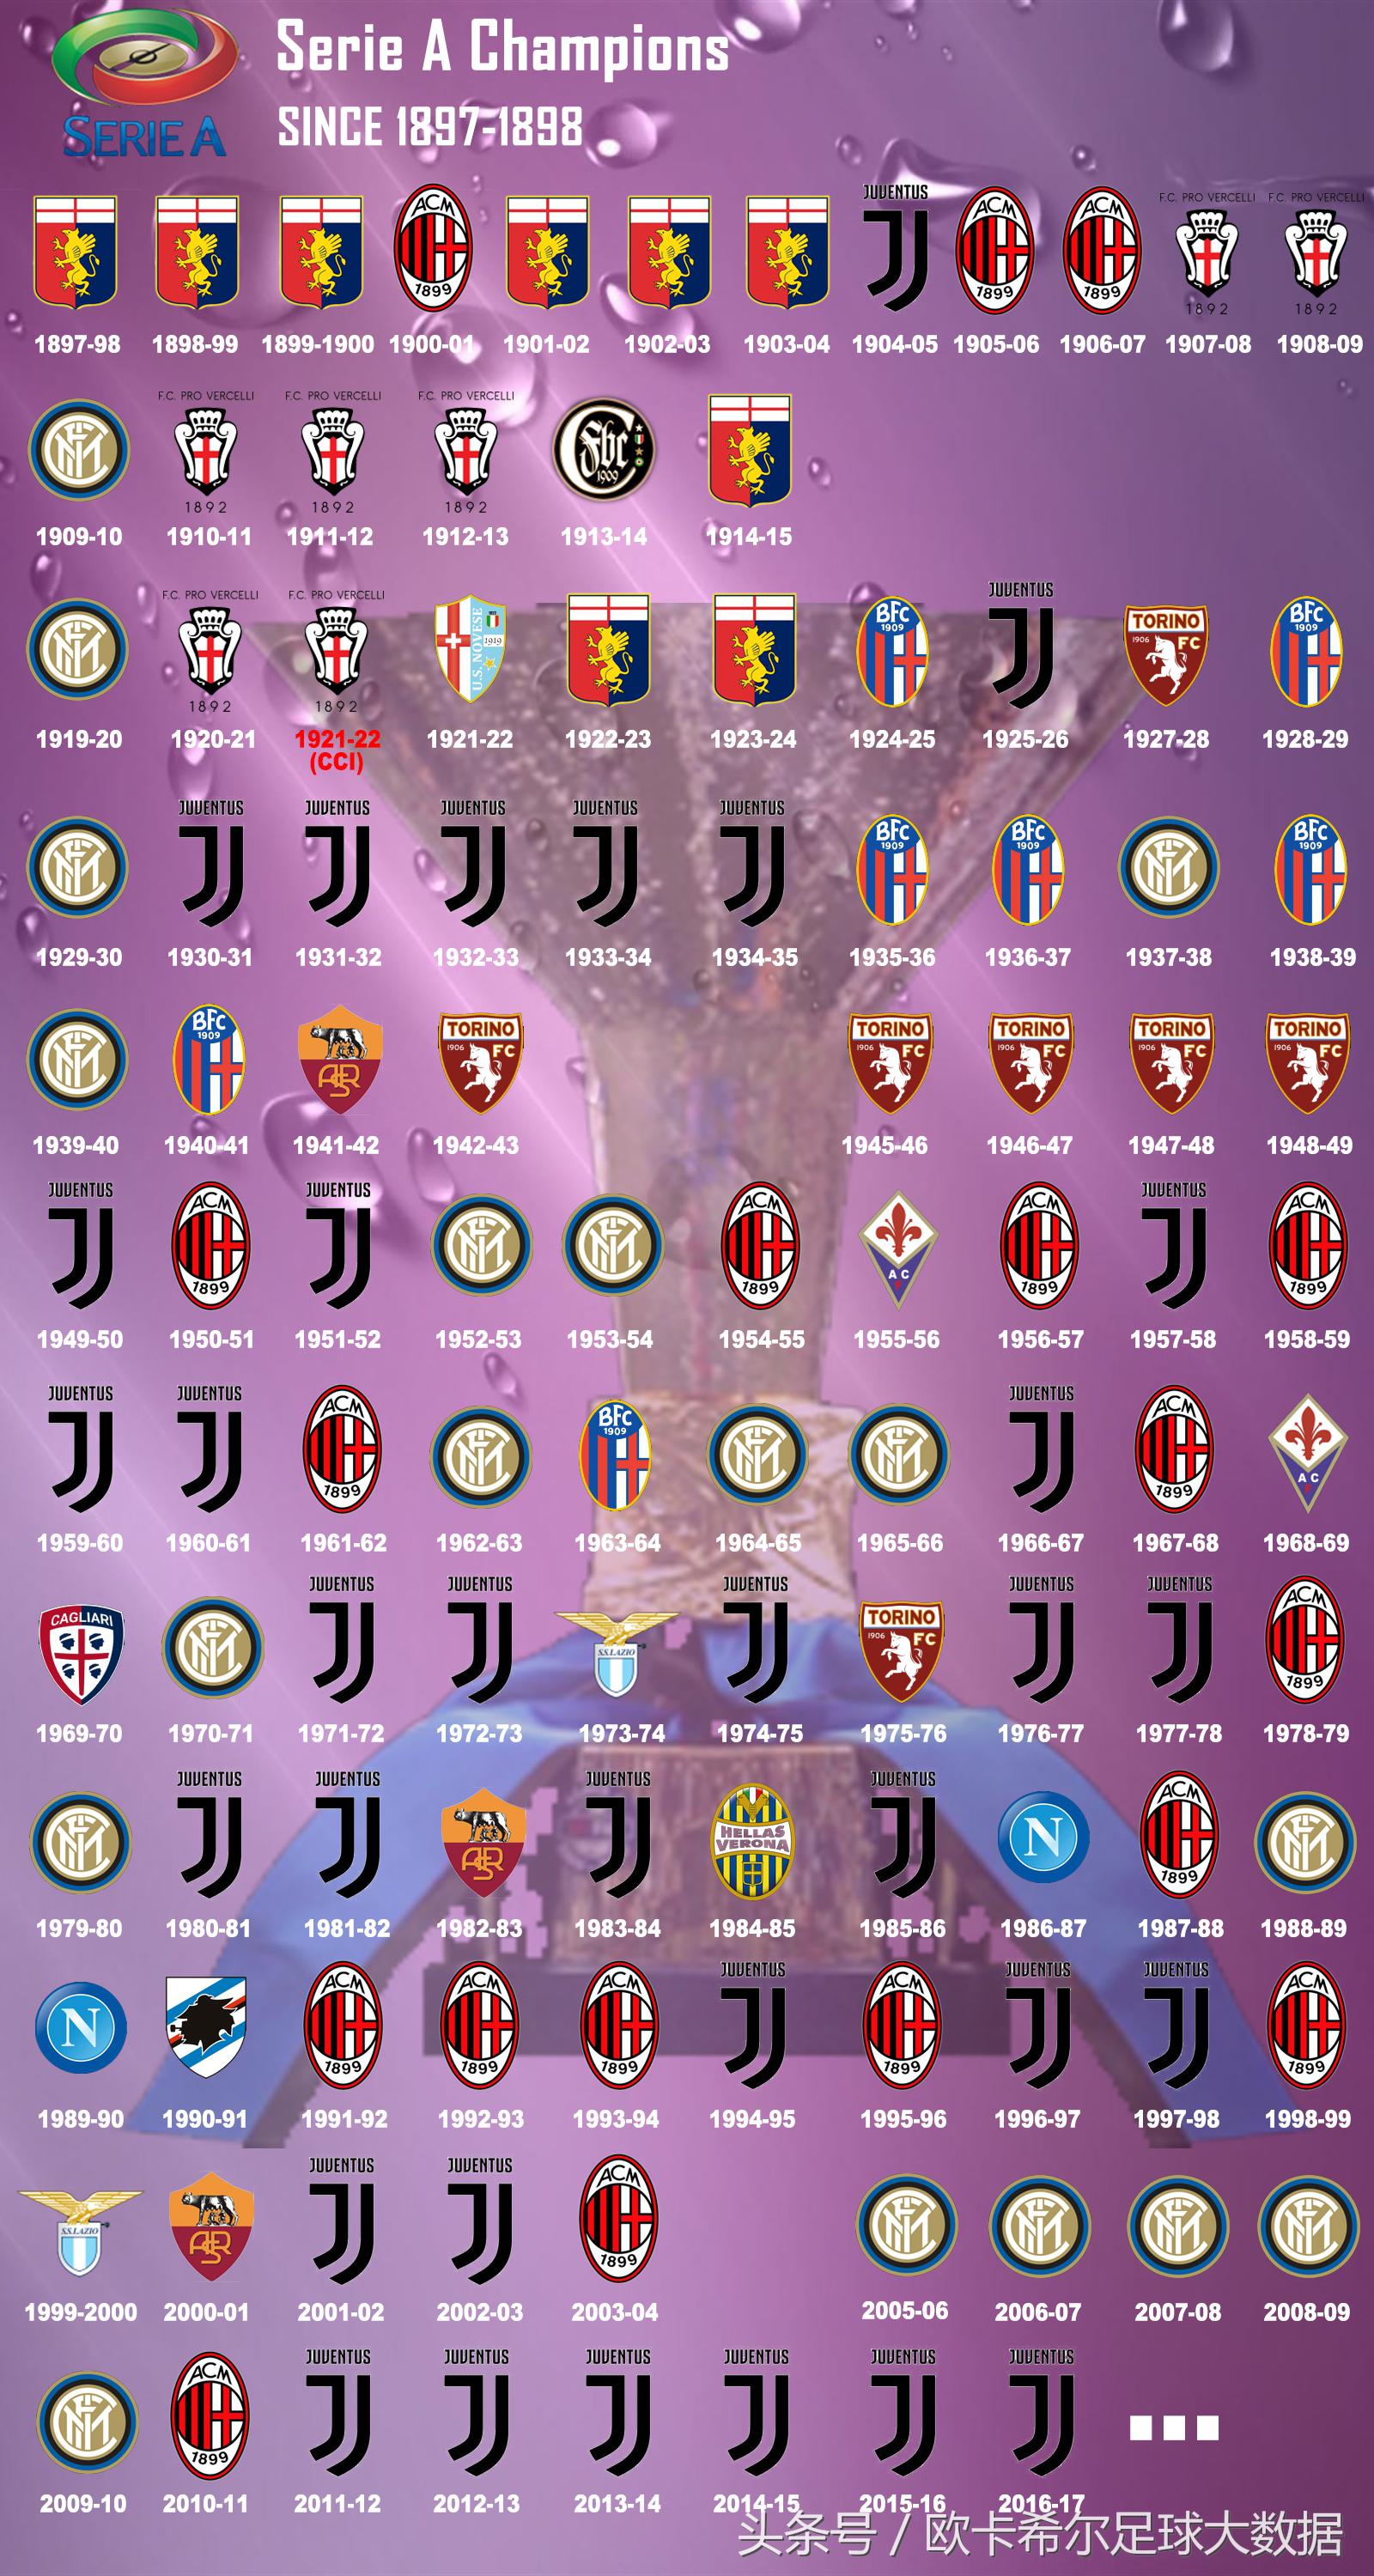 意甲近年联赛冠军 一张图看懂意甲联赛历年冠军(2)